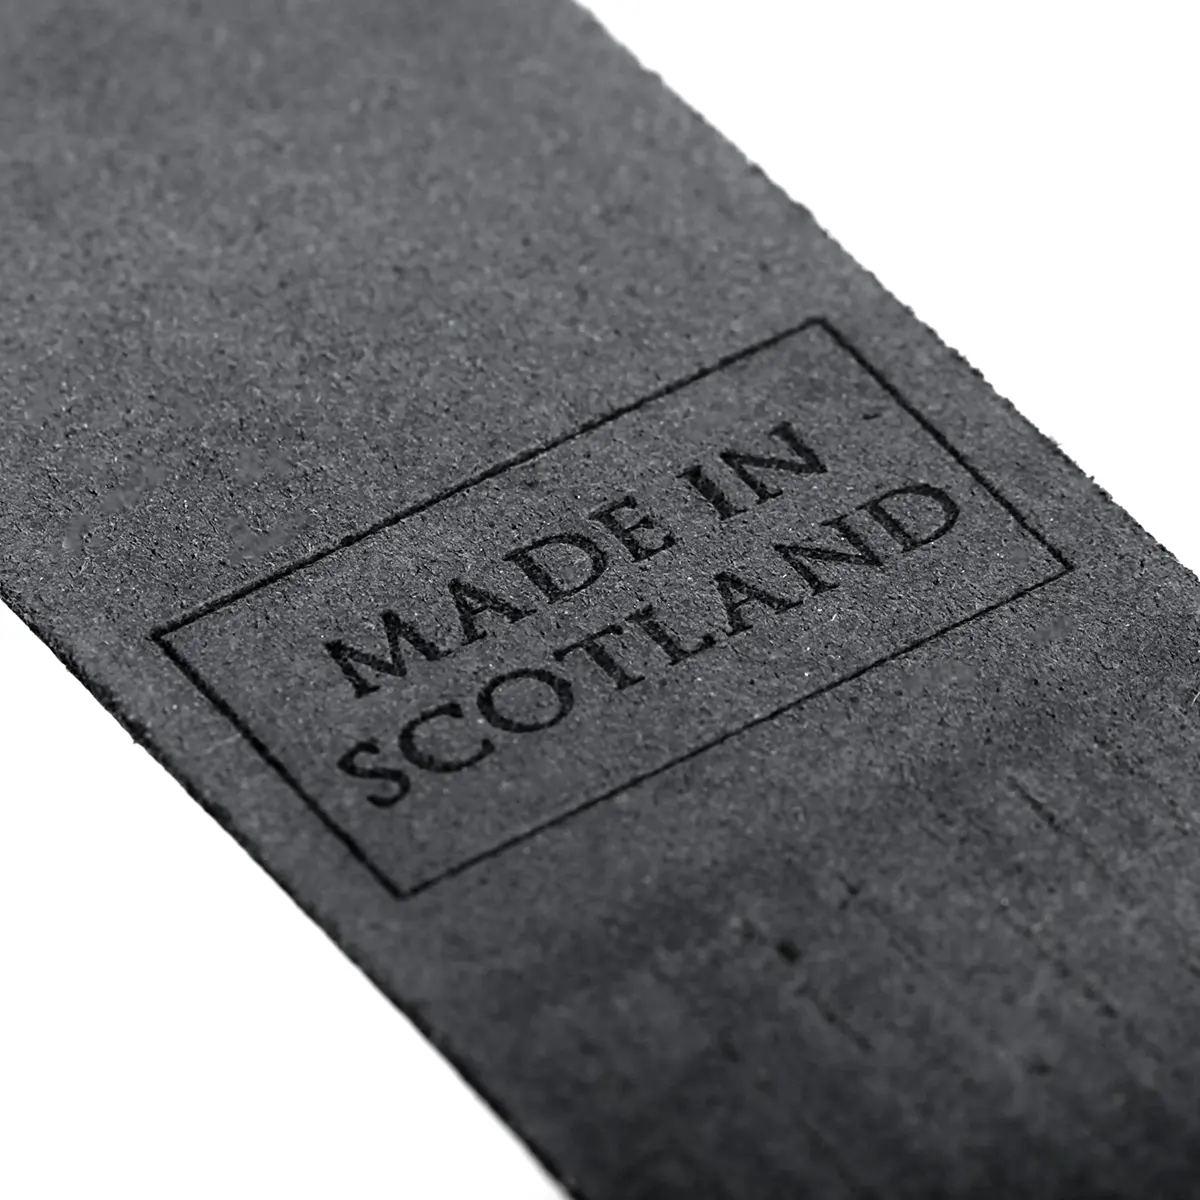 Orkney Islands - Lesezeichen aus Leder in Schwarz - Made in Scotland